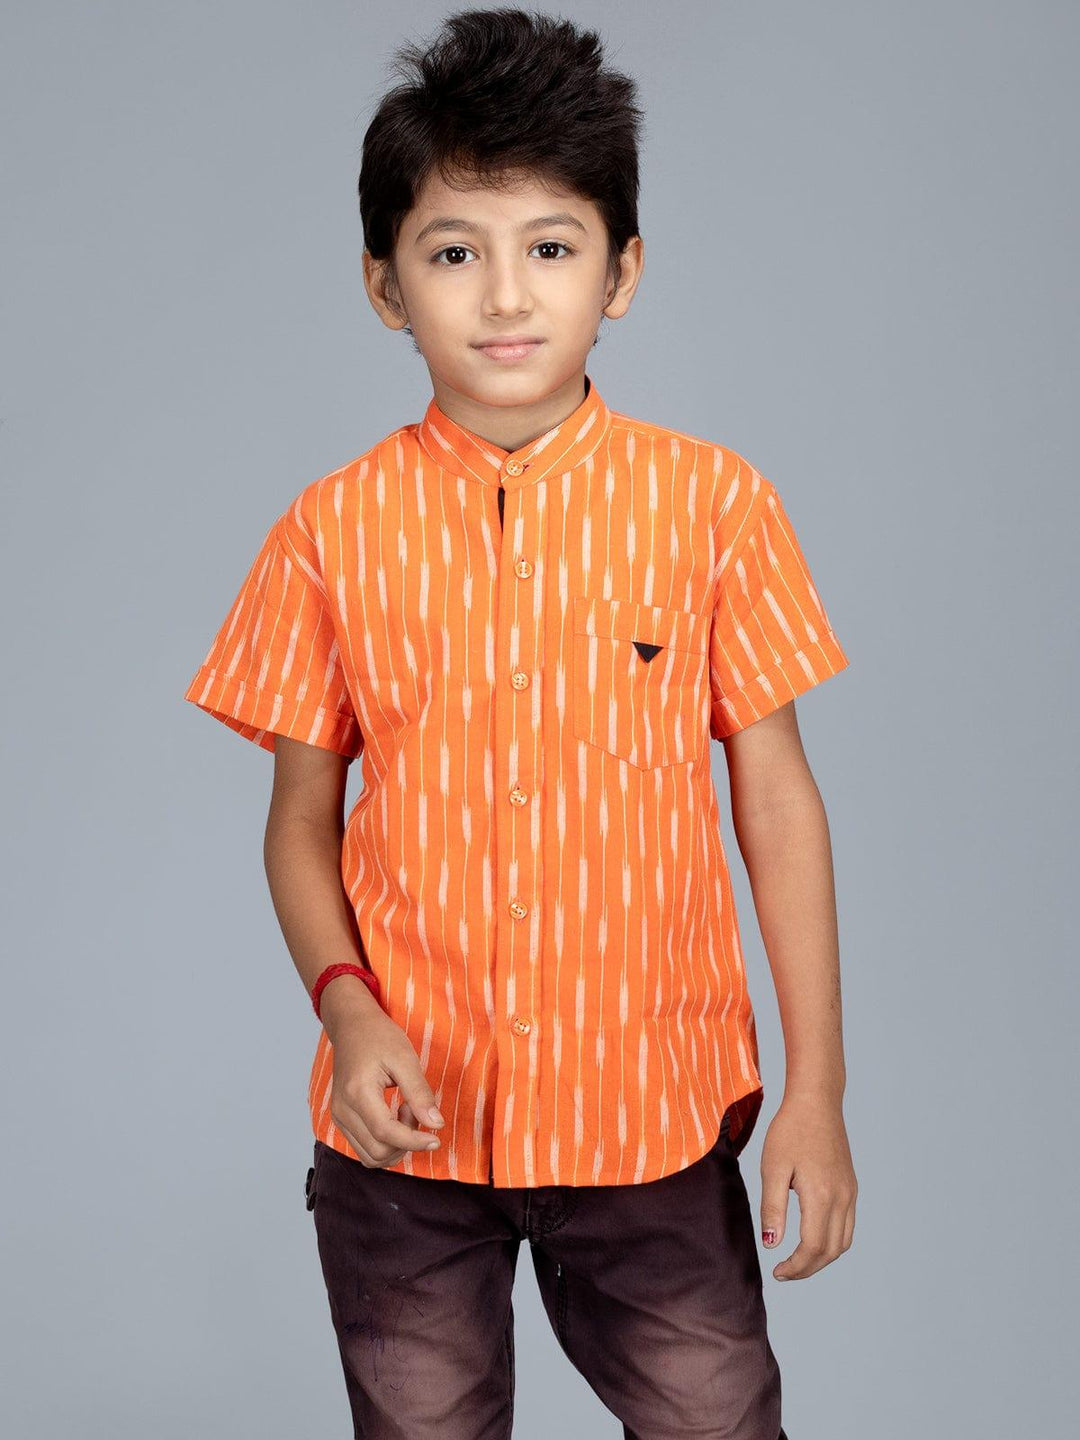 Handwoven Cotton Orange Ikkat Boys Shirt - WeaversIndia